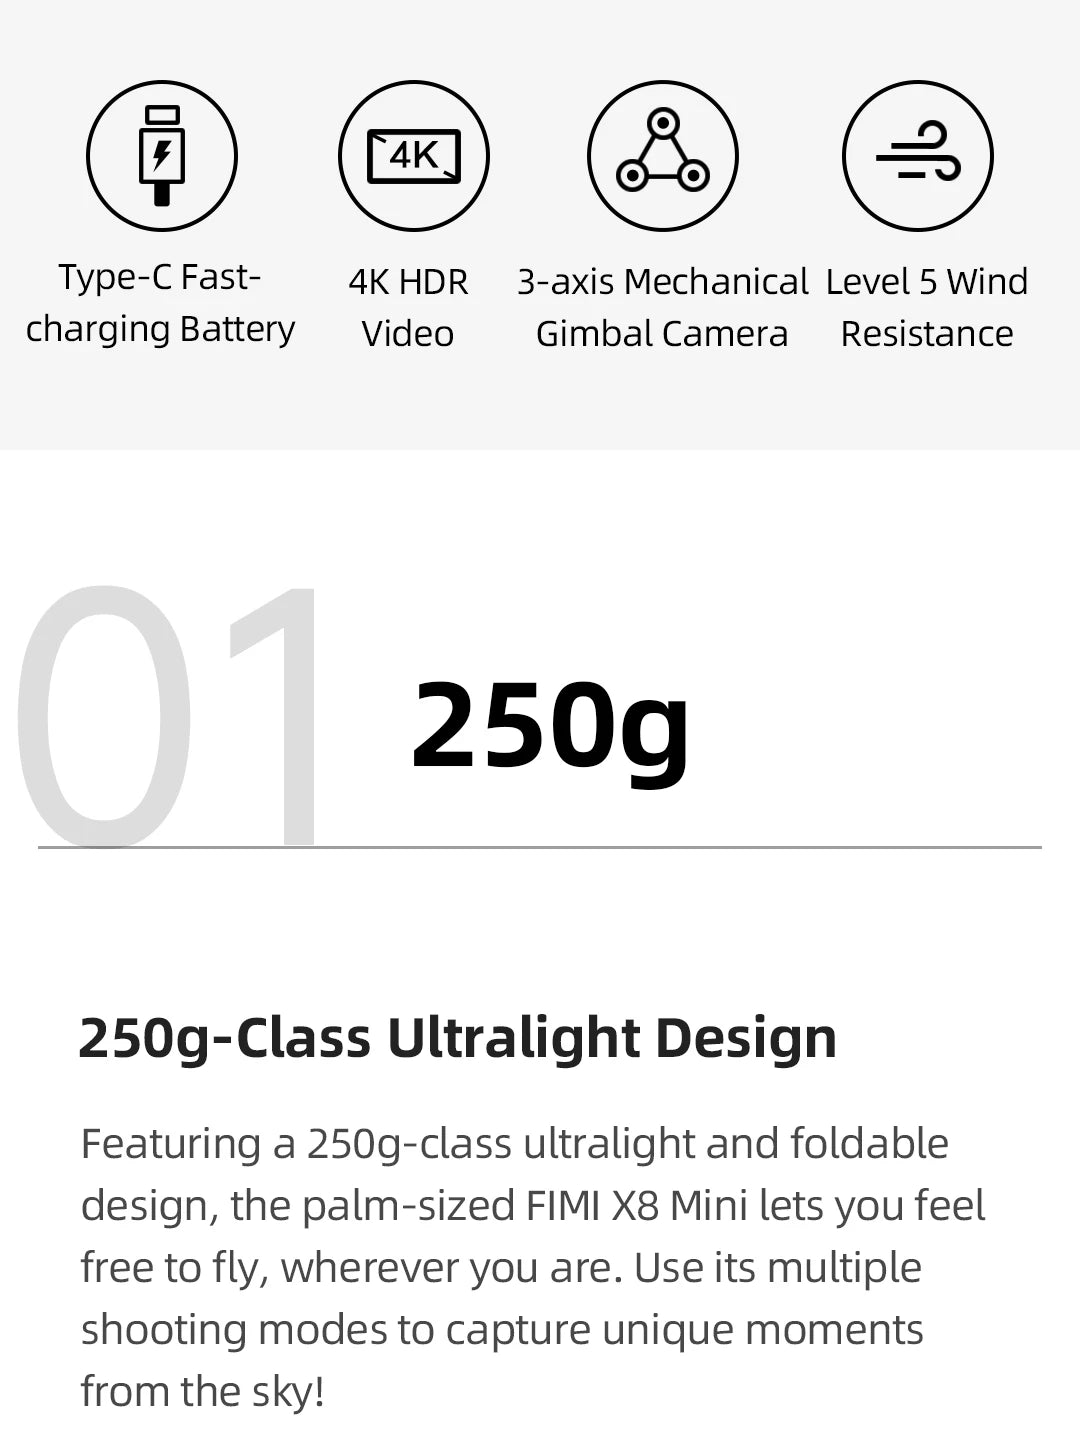 FIMI X8 Mini Drone, FIMI X8 Mini is a 250g-class ultralight and foldable